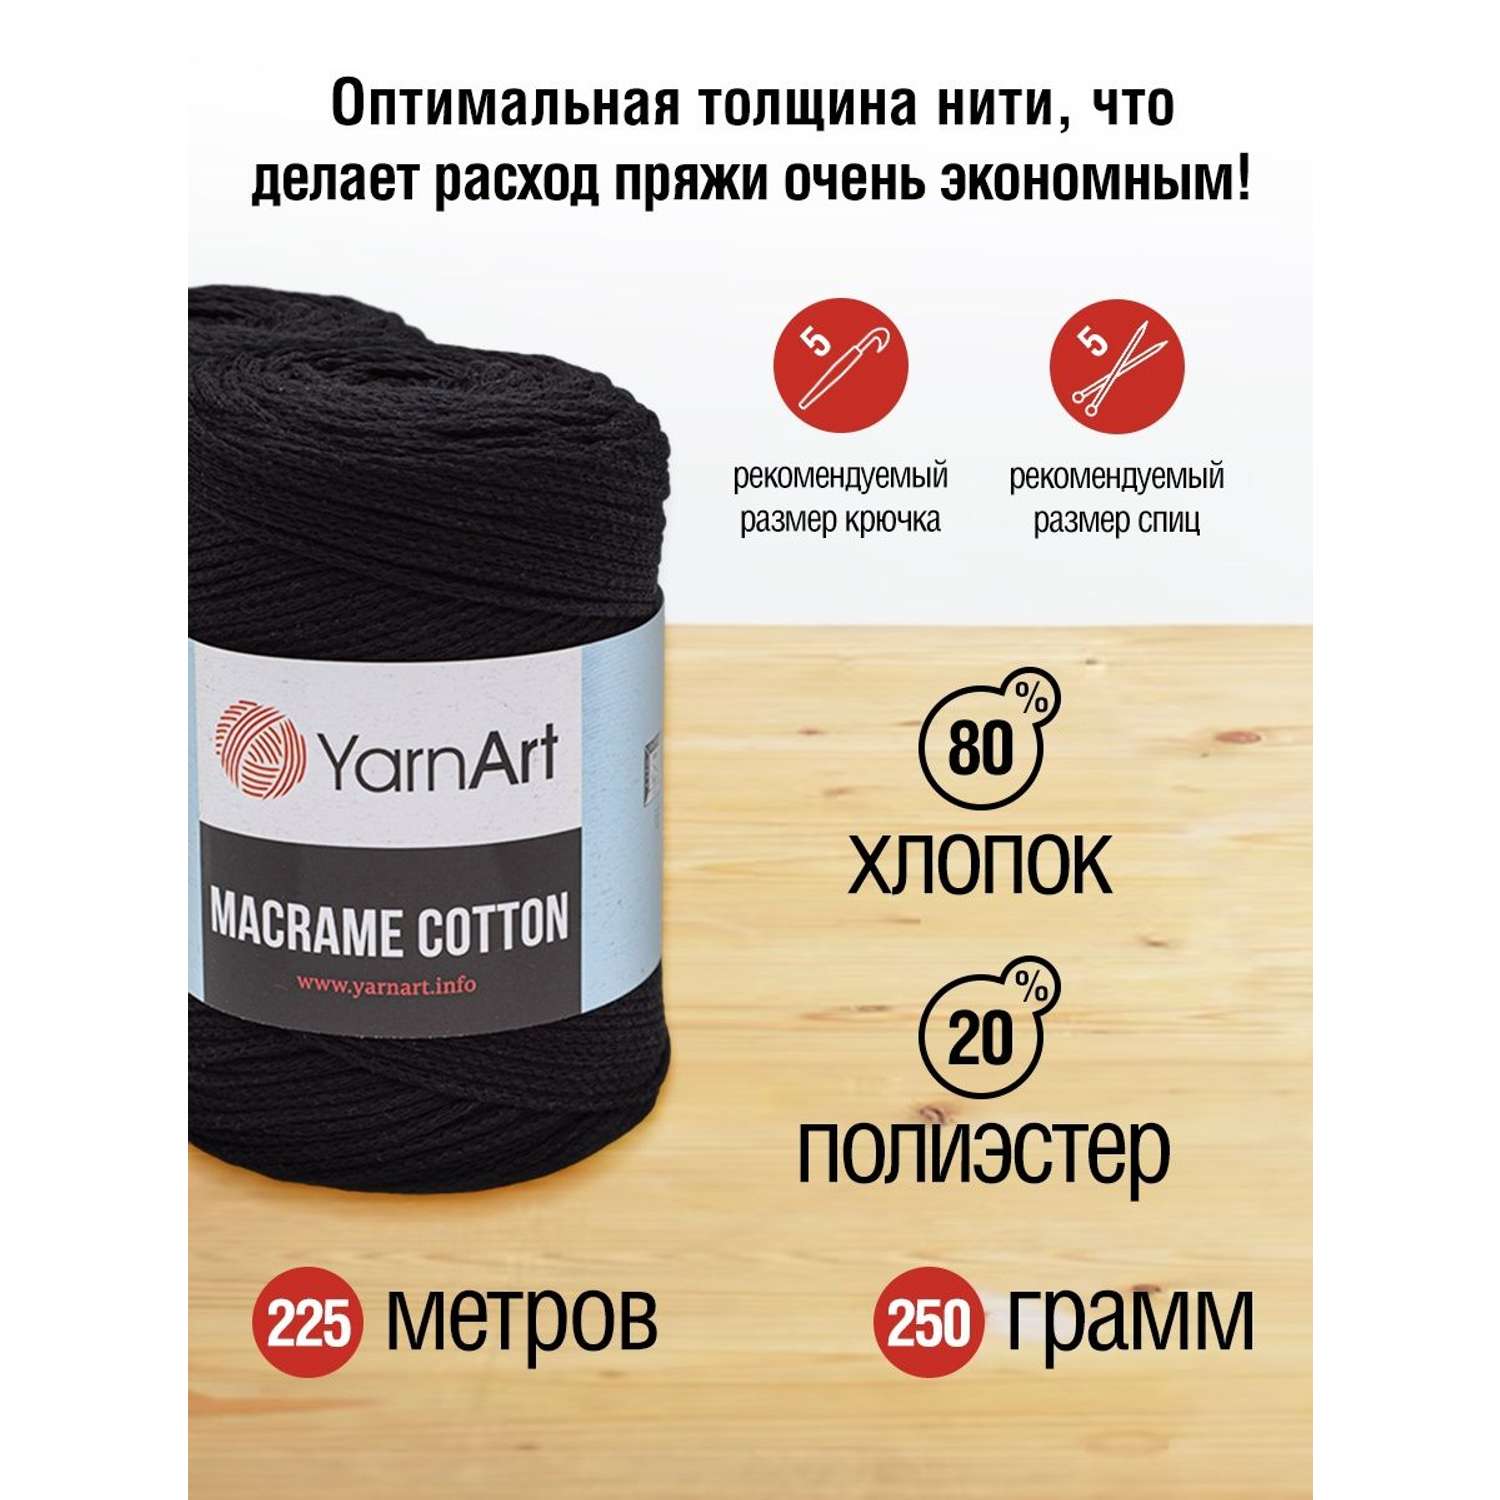 Пряжа YarnArt Macrame Cotton в виде шнура 250 г 225 м 750 черный 4 мотка - фото 3